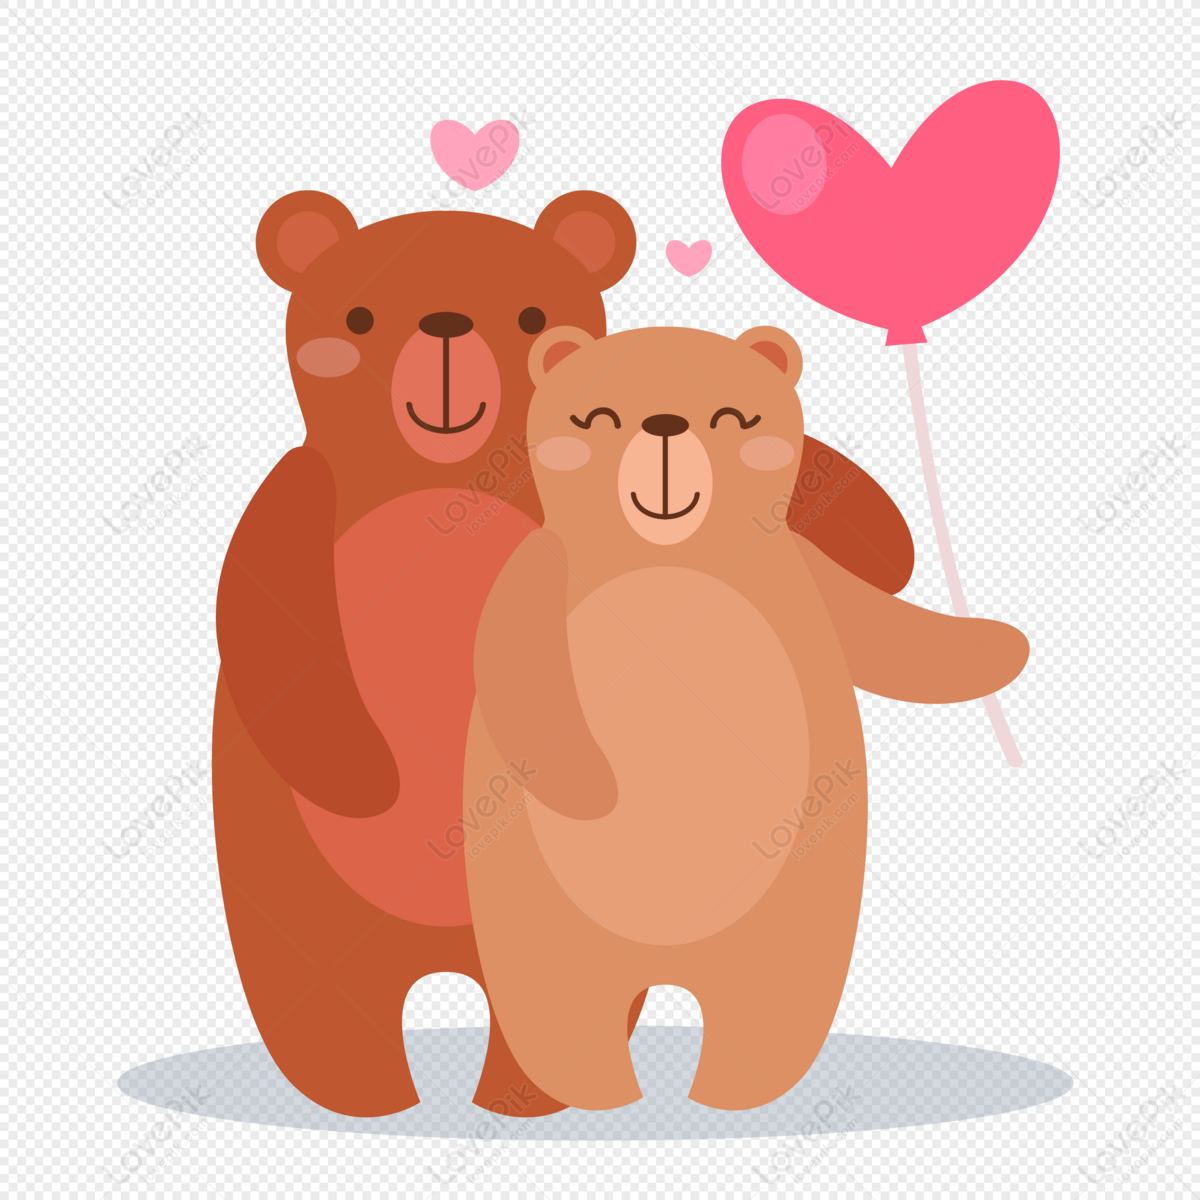 Bạn có biết rằng gấu cũng có thể dễ thương như thế này? Hình ảnh gấu dễ thương này sẽ khiến bạn liền đến muốn nhấc lên và ôm chúng. Hãy nhấn vào ảnh và thả mình vào thế giới của những con vật đáng yêu này.